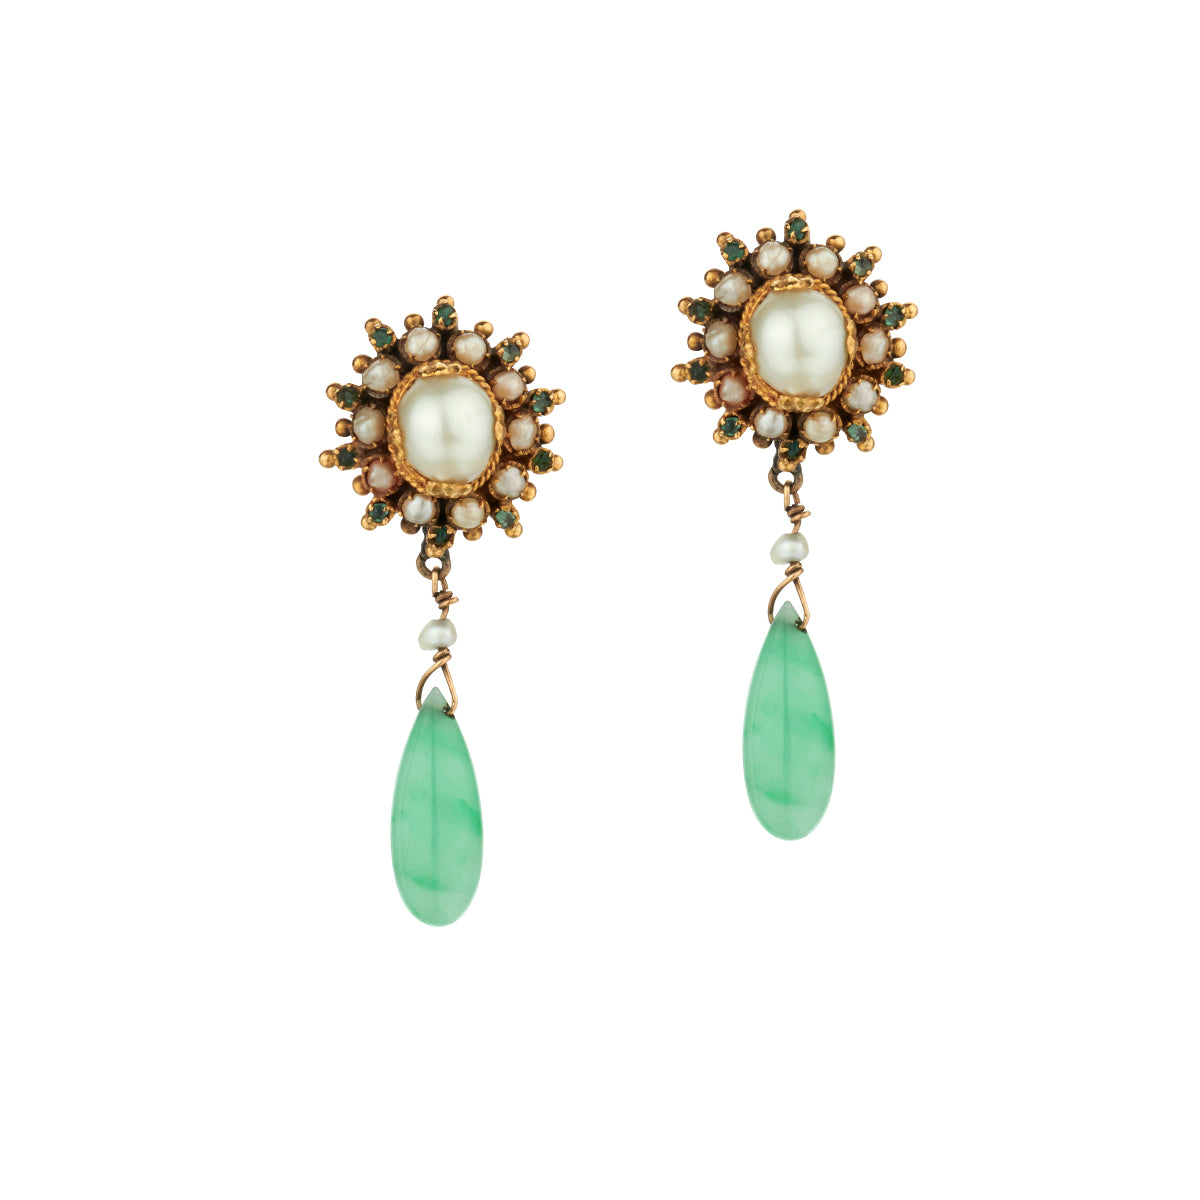 Vintage Jade and Seed Pearl Drop/Pendant Earrings.